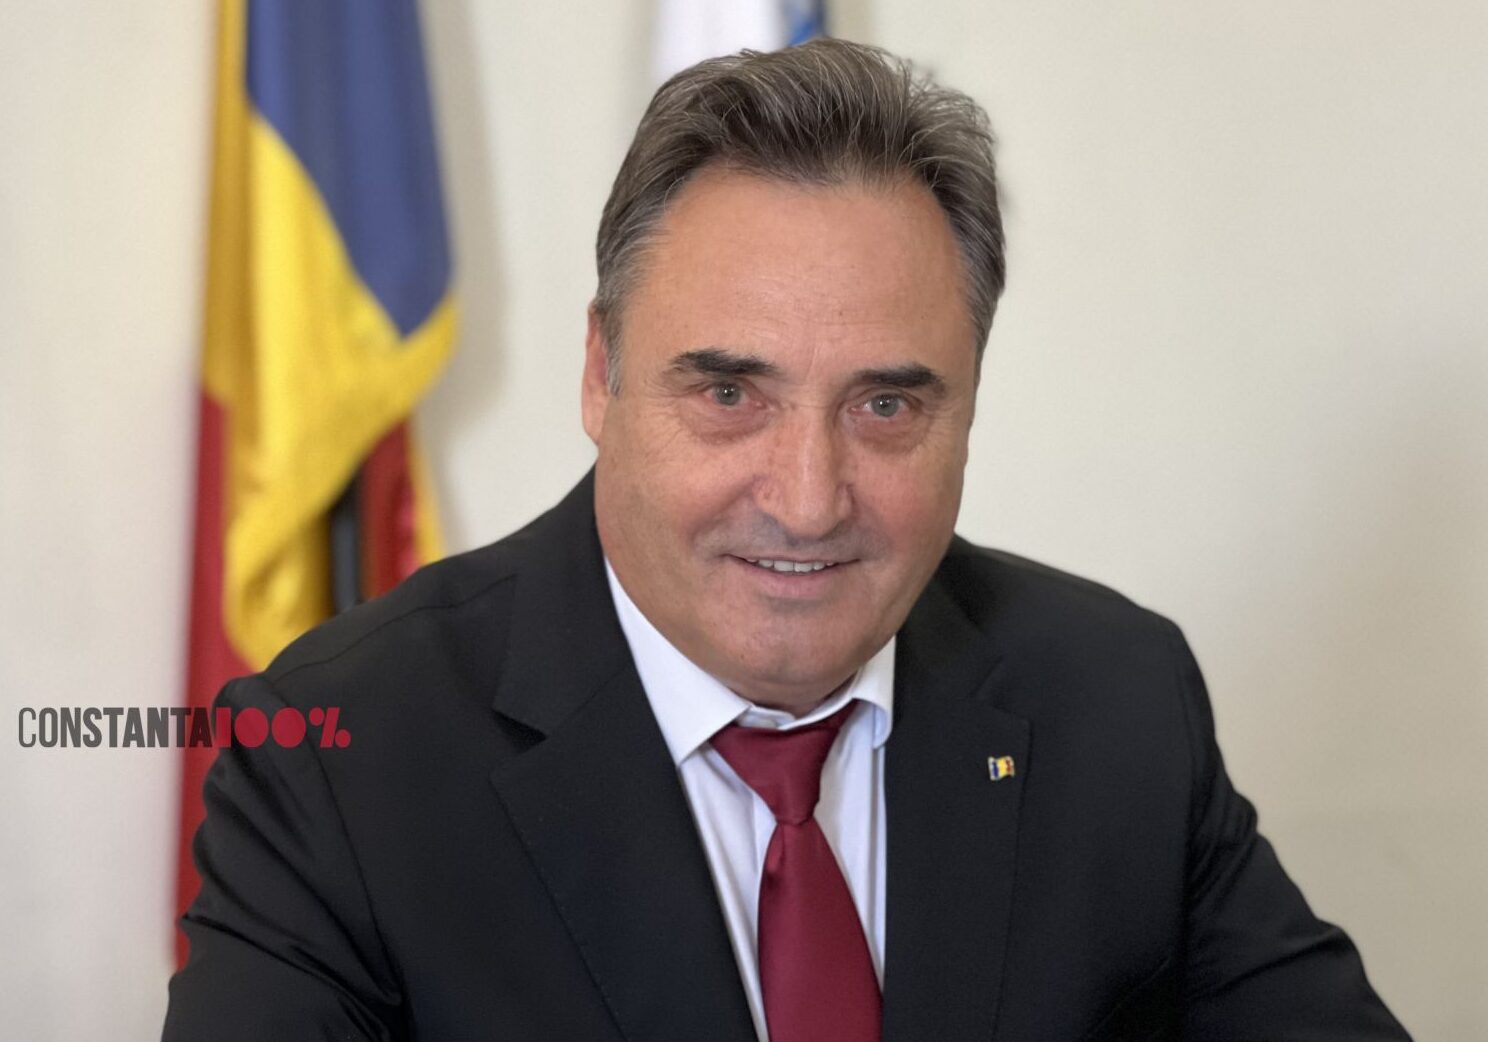 Asociația Elevilor din Constanța, mesaj către Mihai Lupu, președintele CJC: „Nici Radu Mazăre nu a avut tupeul să dea în judecată elevii pentru că aceștia și-au cerut drepturile.” Răspunsul acestuia